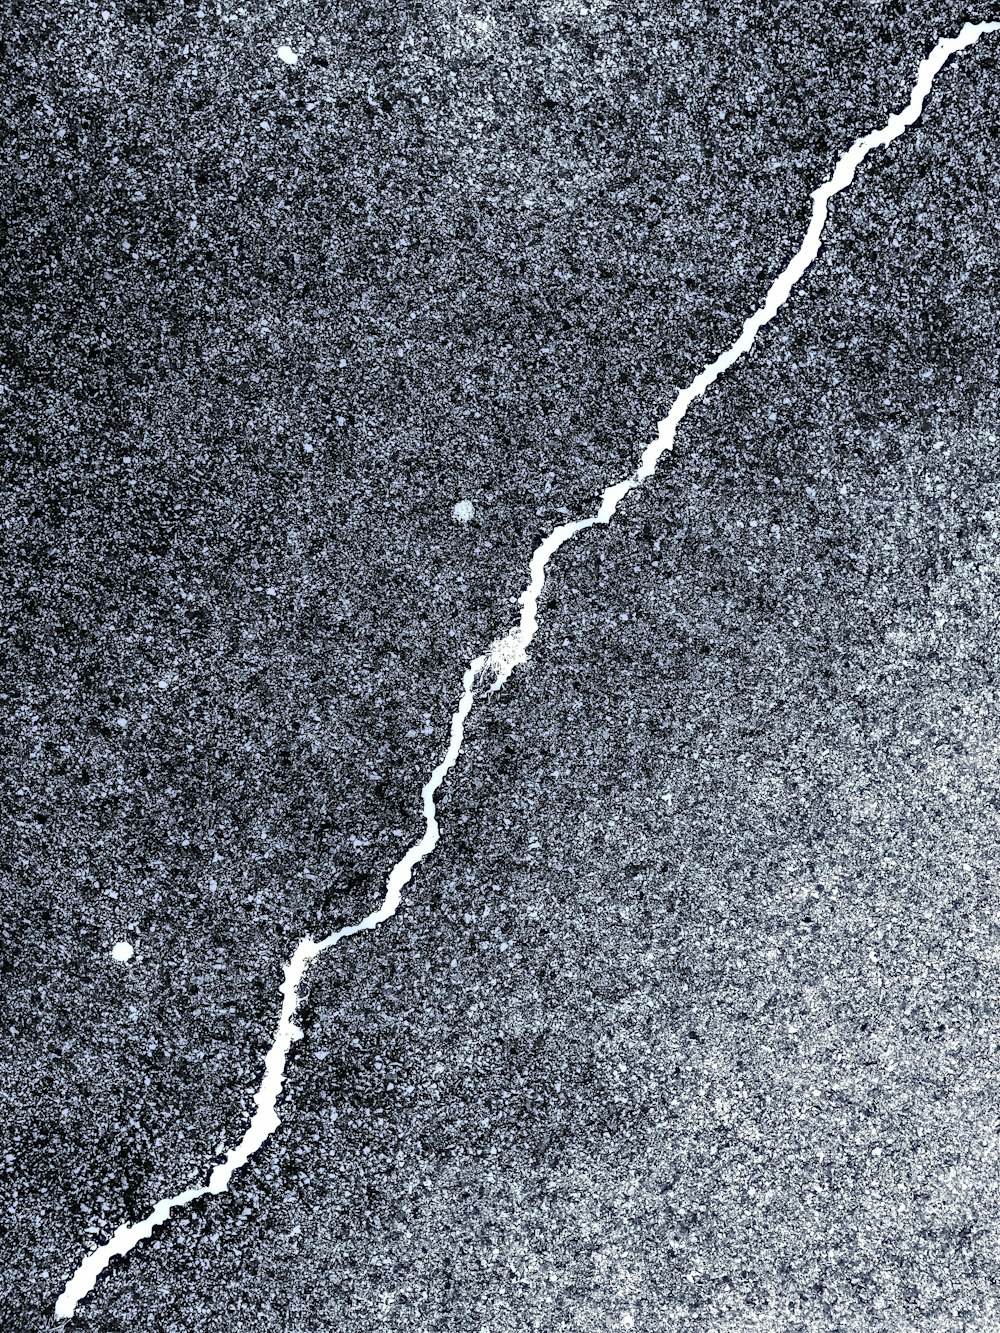 Una foto en blanco y negro de una grieta en el suelo